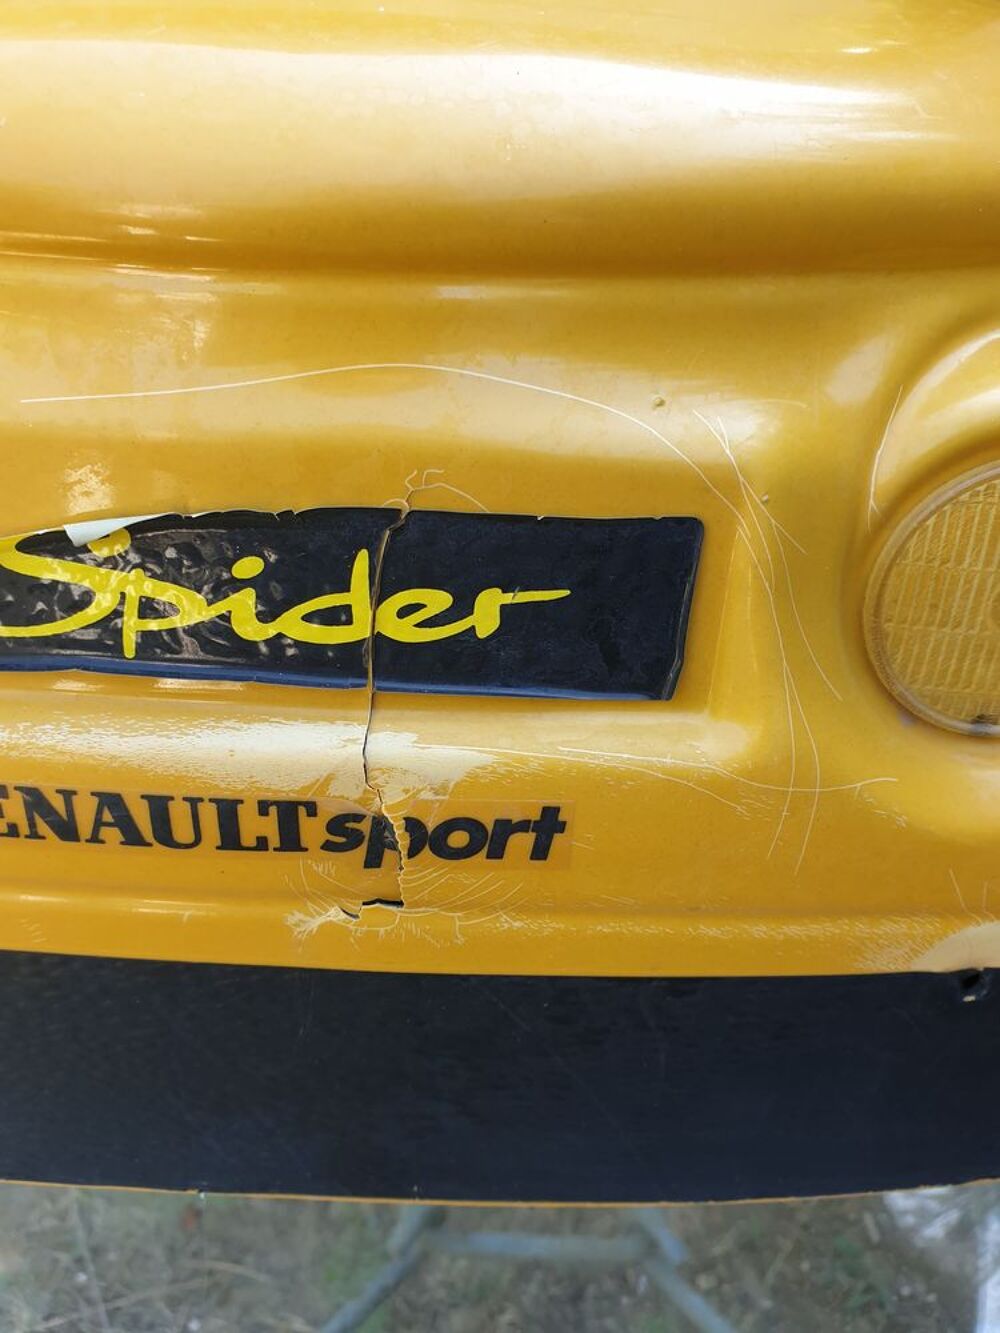 Voiture Renault Spider &agrave; p&eacute;dale.
Jeux / jouets